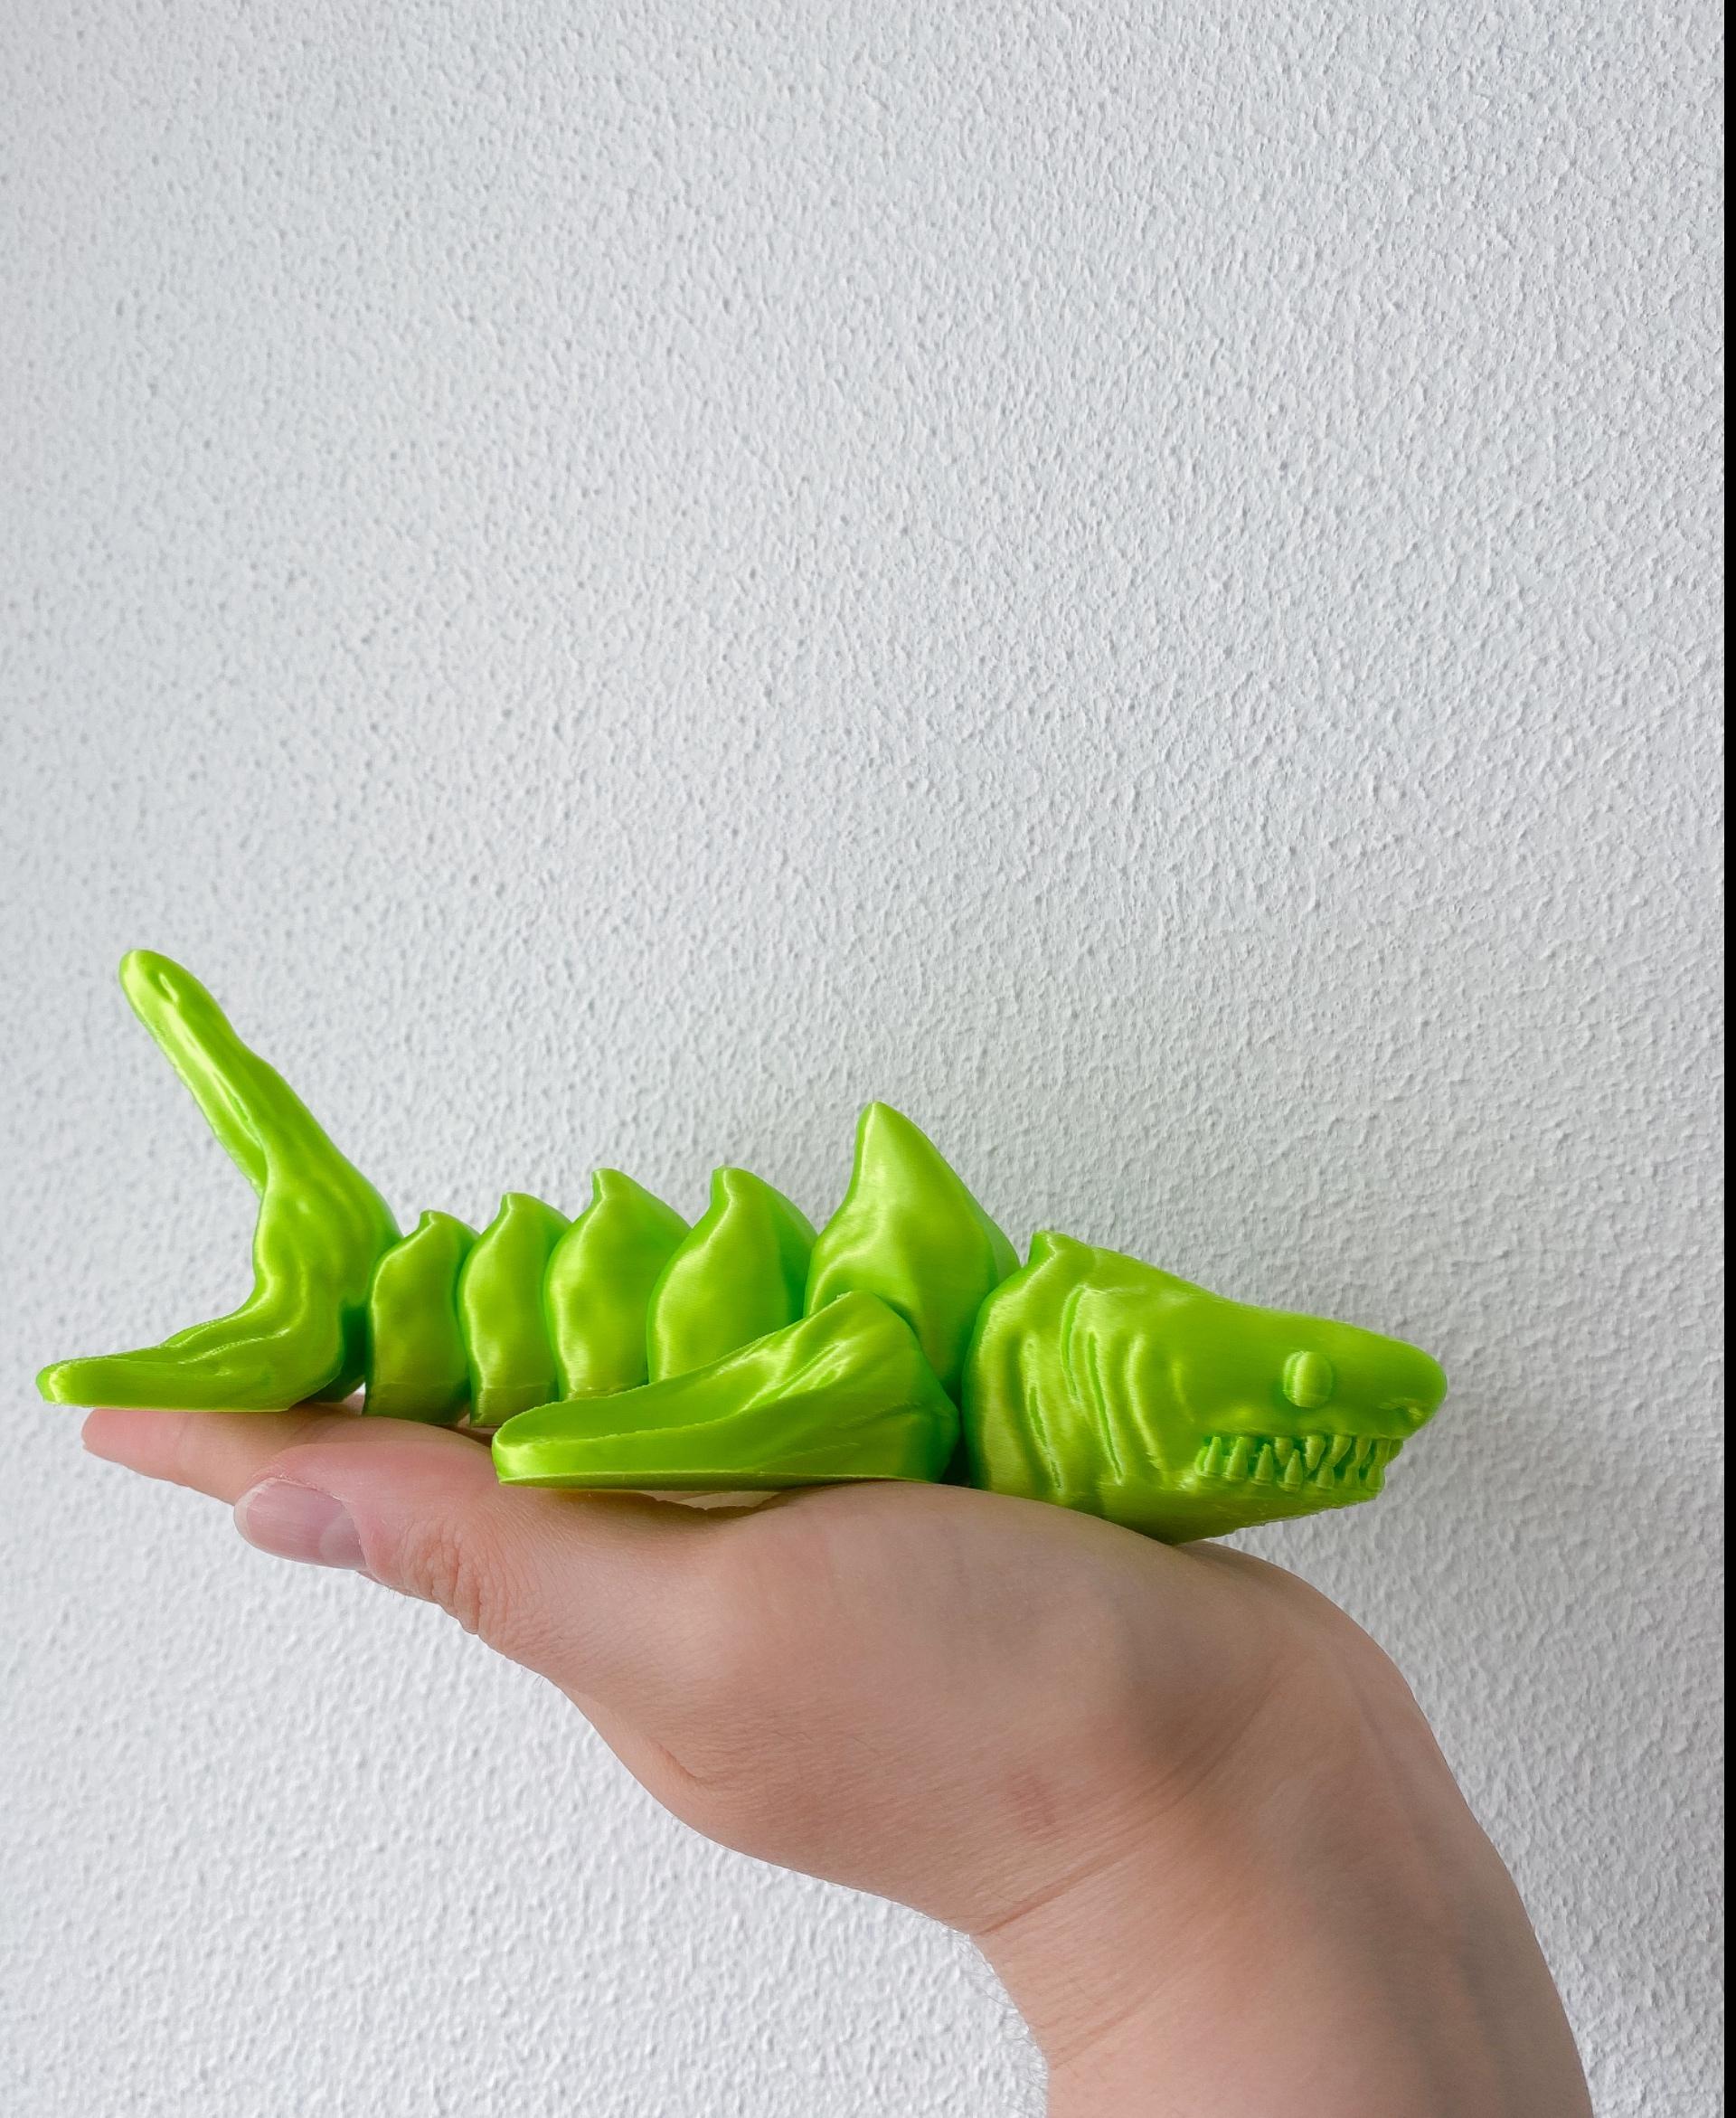 Rattleshark  - Meet the green dangerous shark.
Polymaker silk filament - 3d model